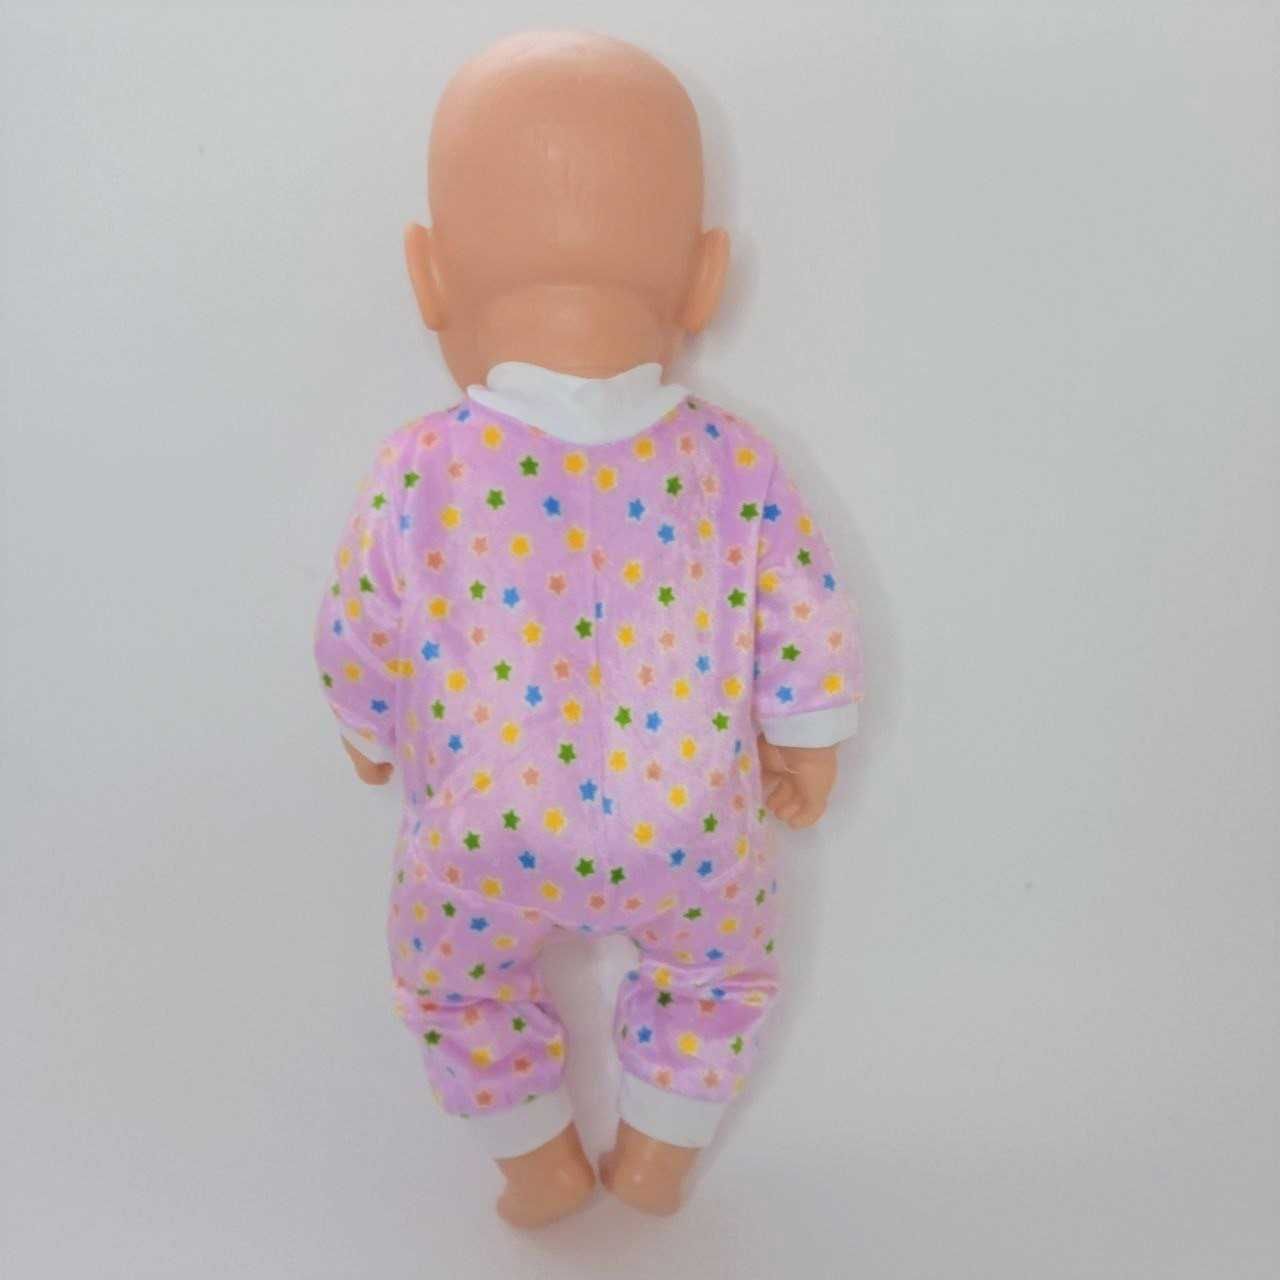 Одежда для куклы 40 см Беби Бона / Baby Born  слип / человечек розовый